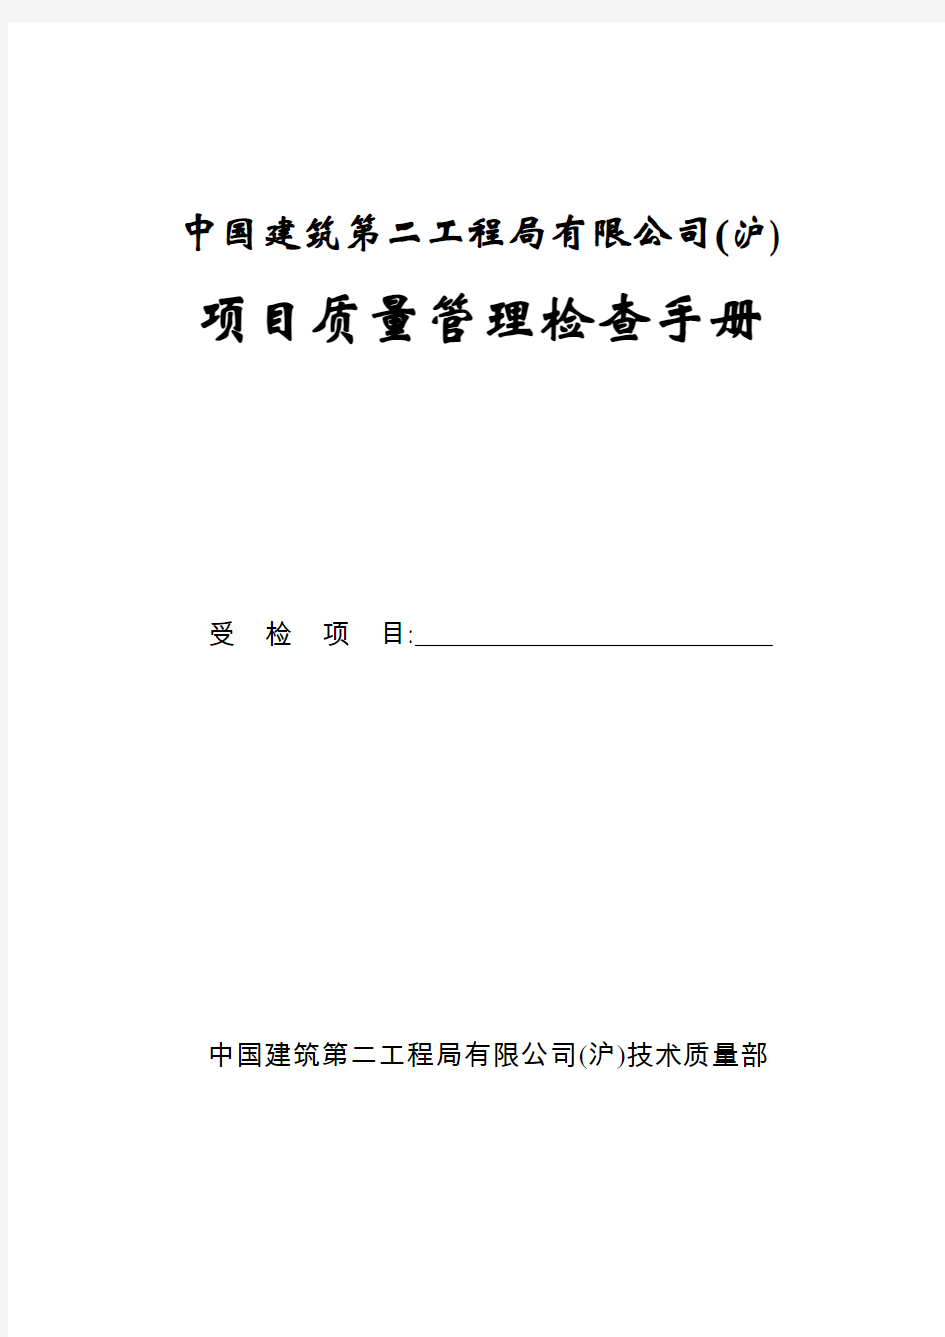 中国建筑第二工程局有限公司质量检查手册(1)